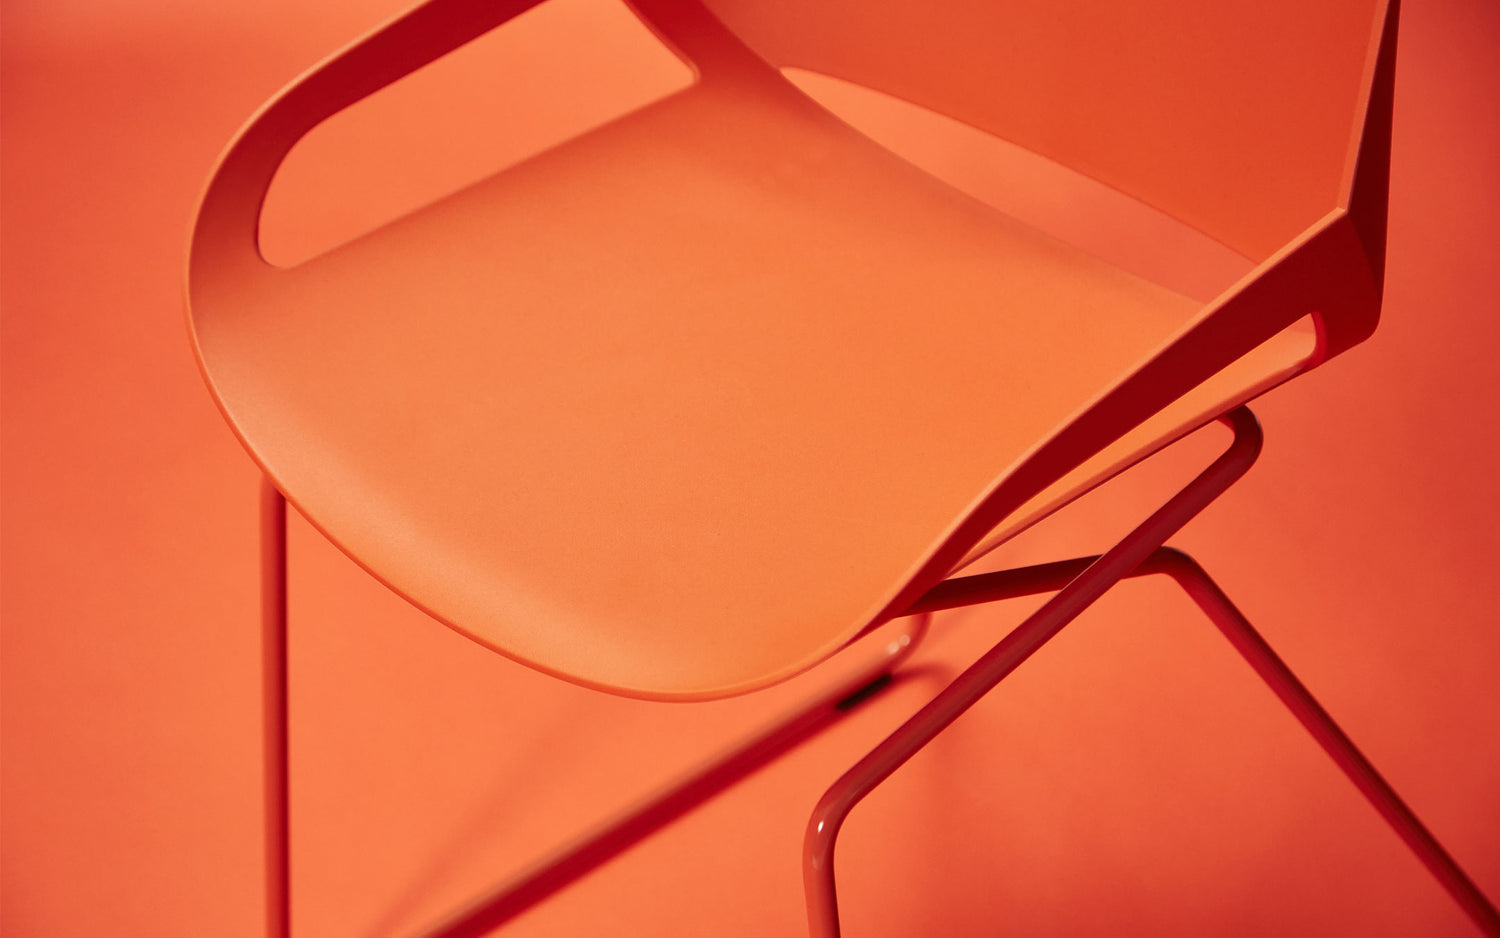 Aeris Numo skid frame in orange-red